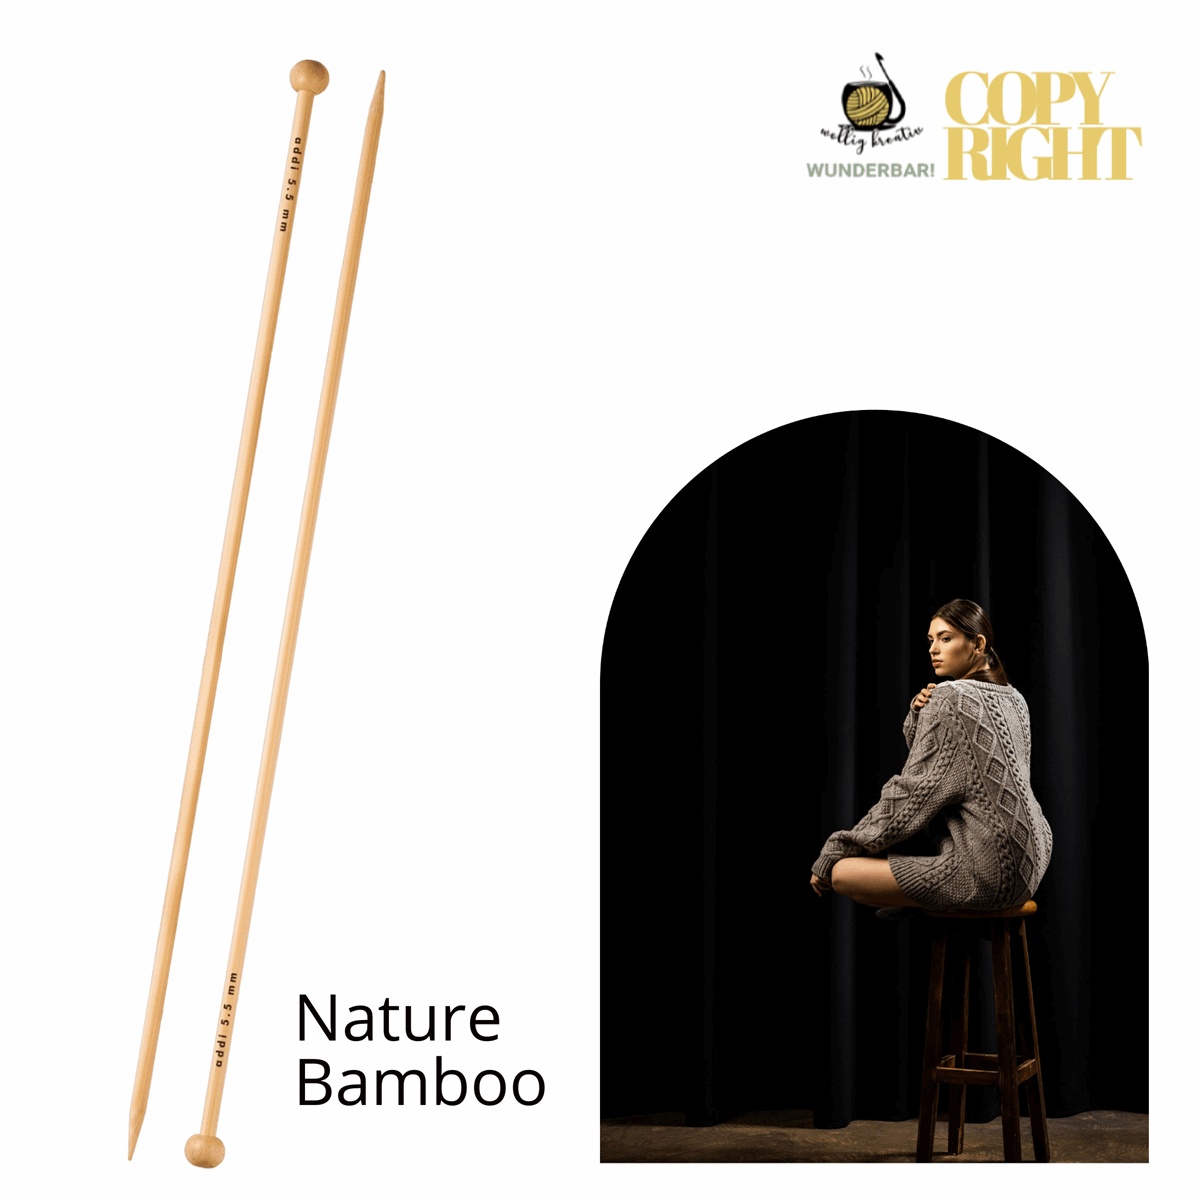 Addi, Nature Bamboo jacket knitting needle, 65007, size 3.75, length 35